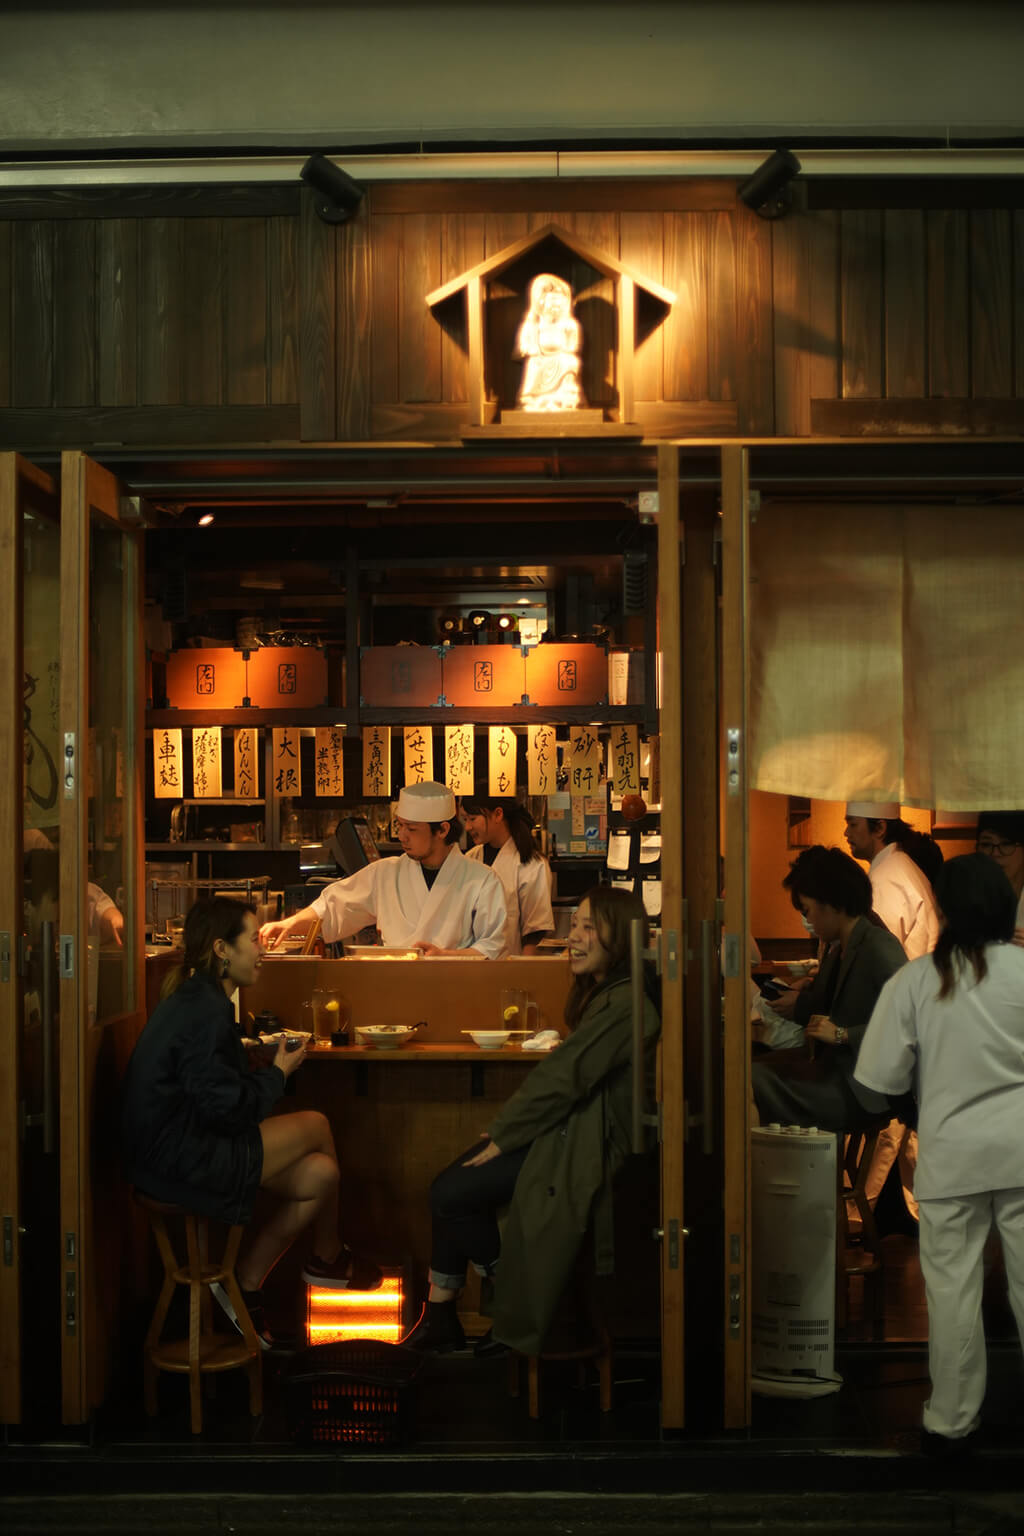 Customers are enjoying eating at Japanese izakaya